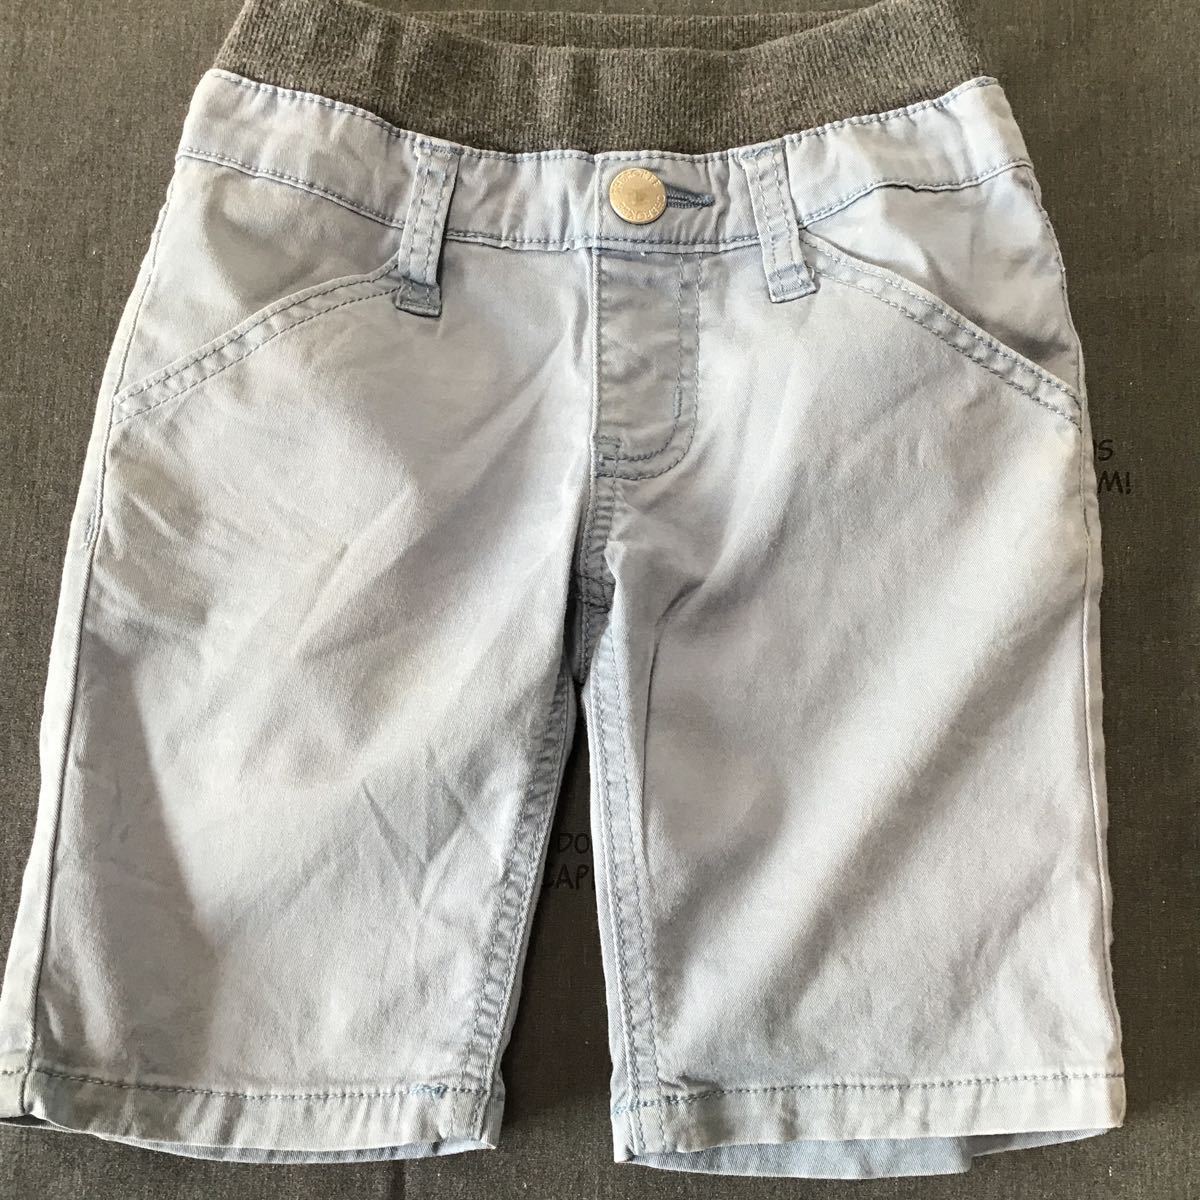 used ребенок одежда [ запад сосна магазин CHEROKEE 110 размер бледно-голубой укороченные брюки ] брюки / выгорел цвет кромка .... царапина есть 